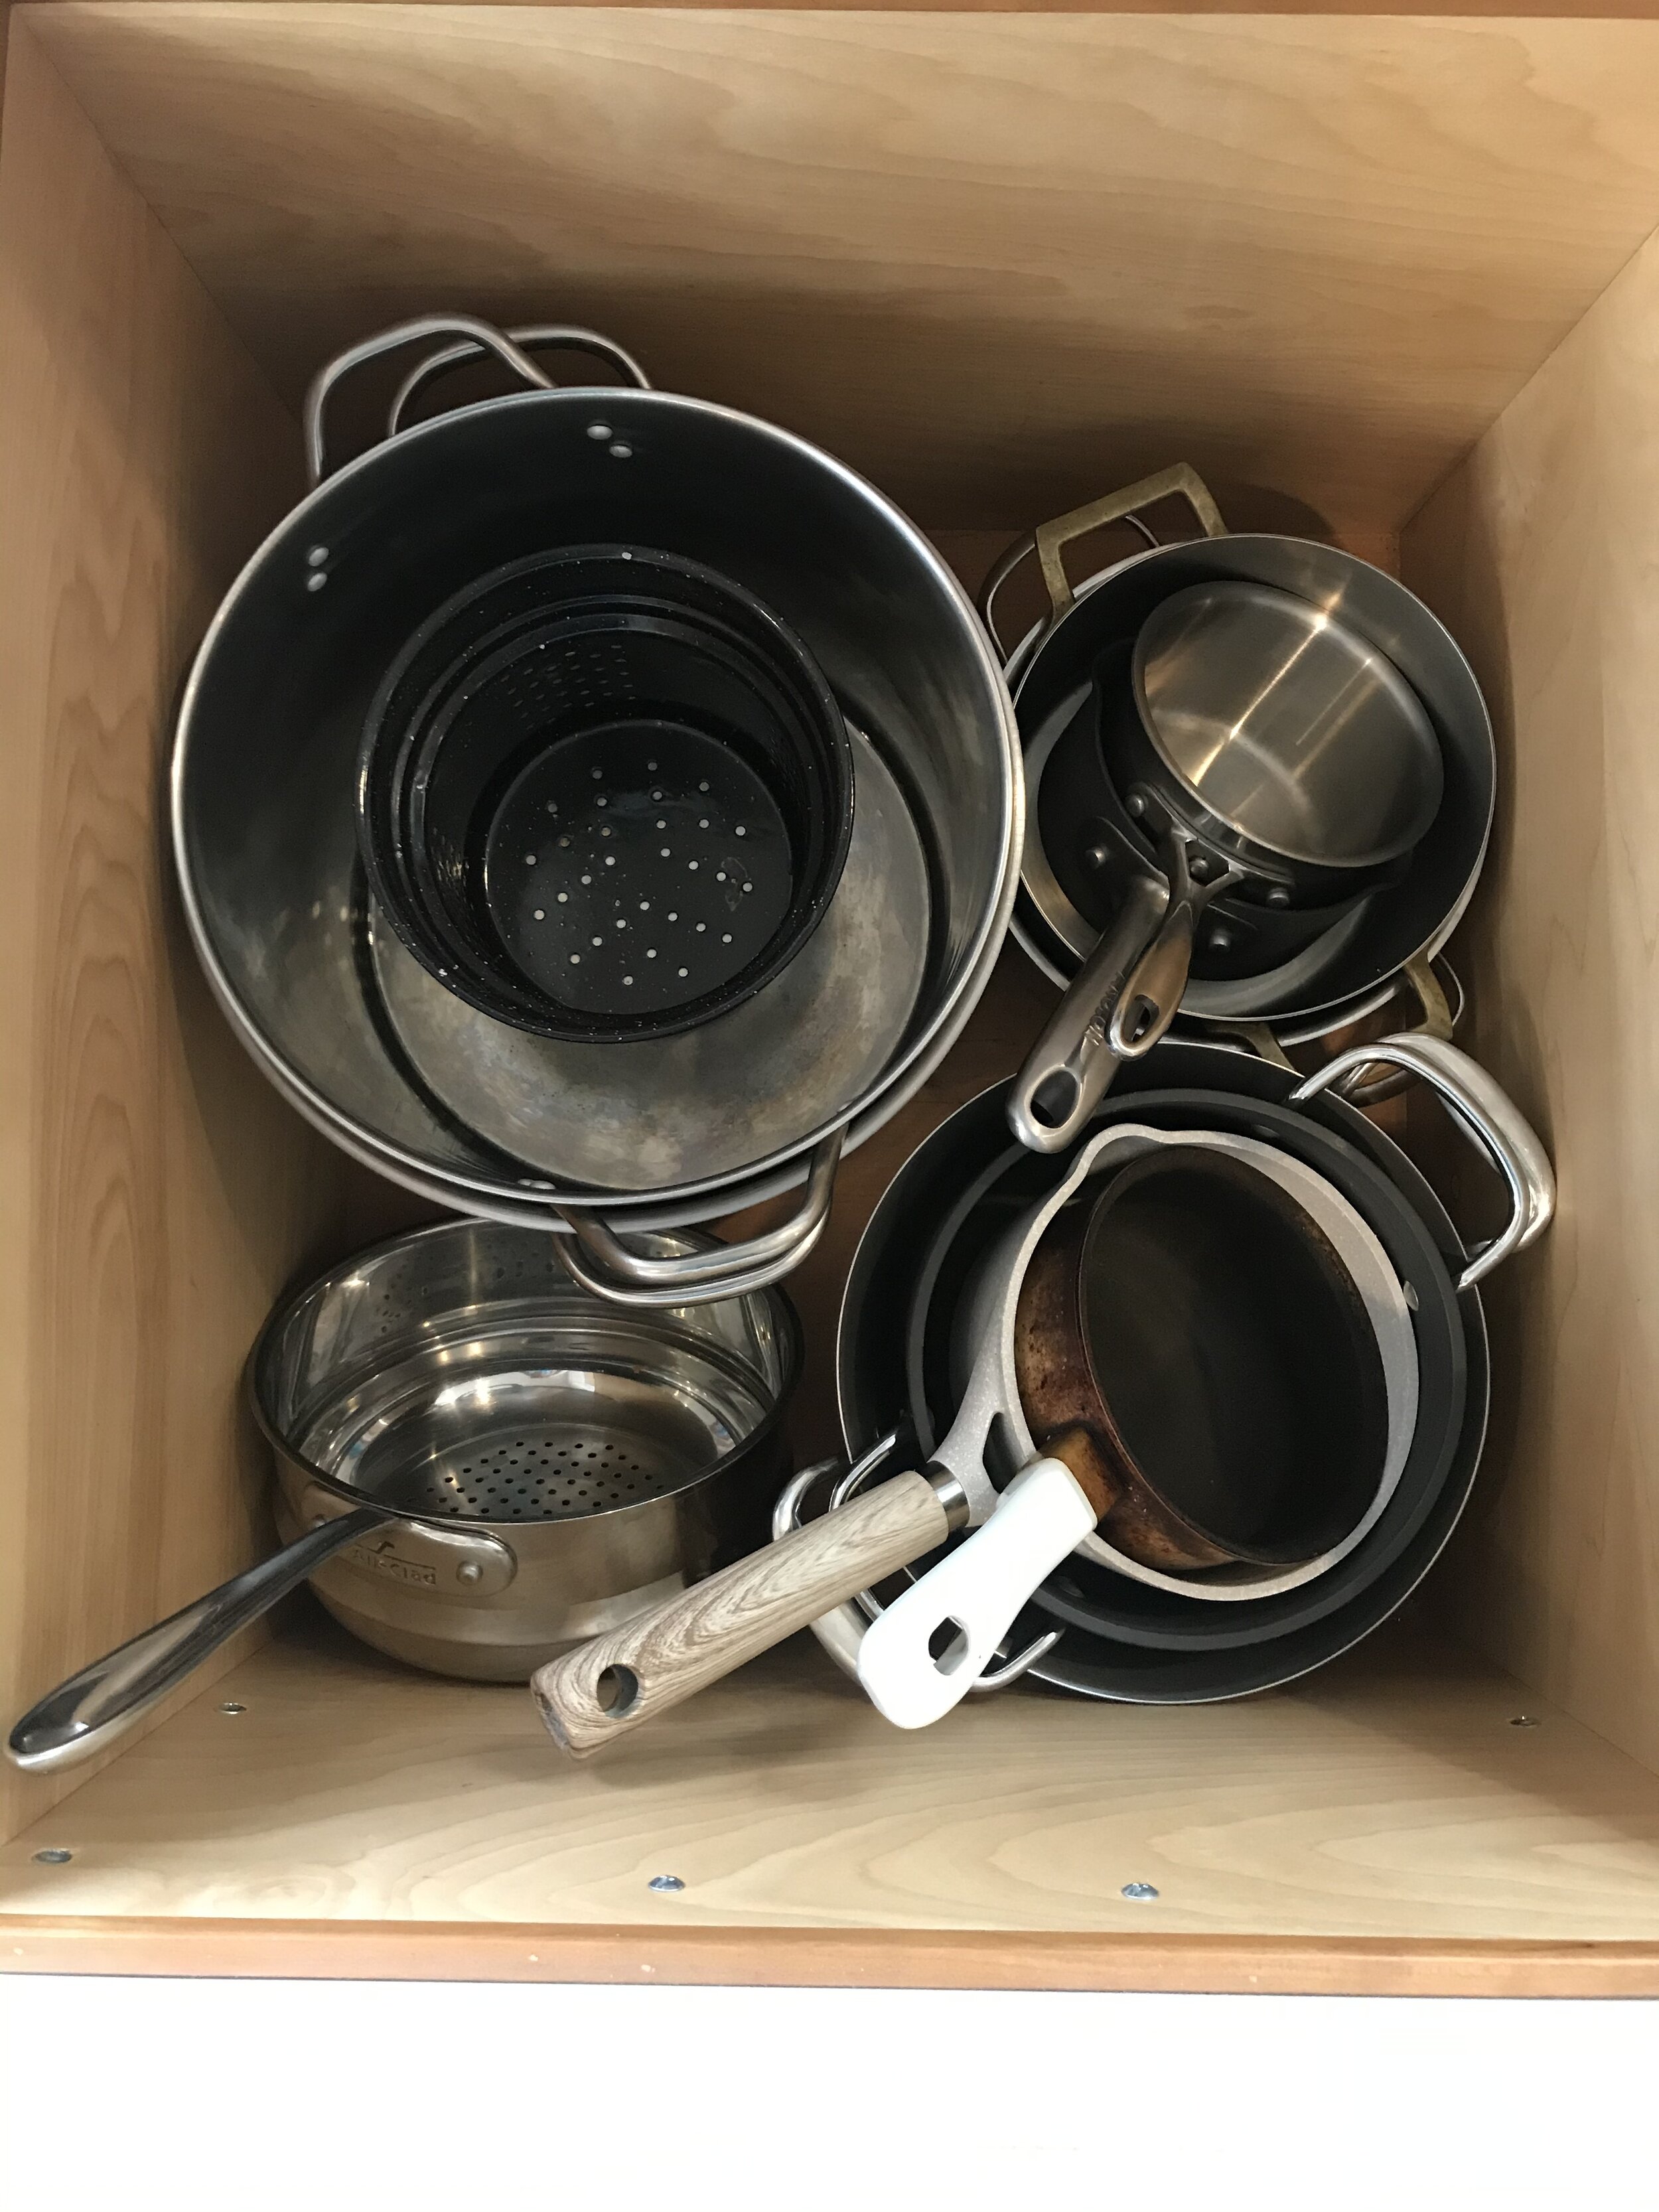 After - pan drawer